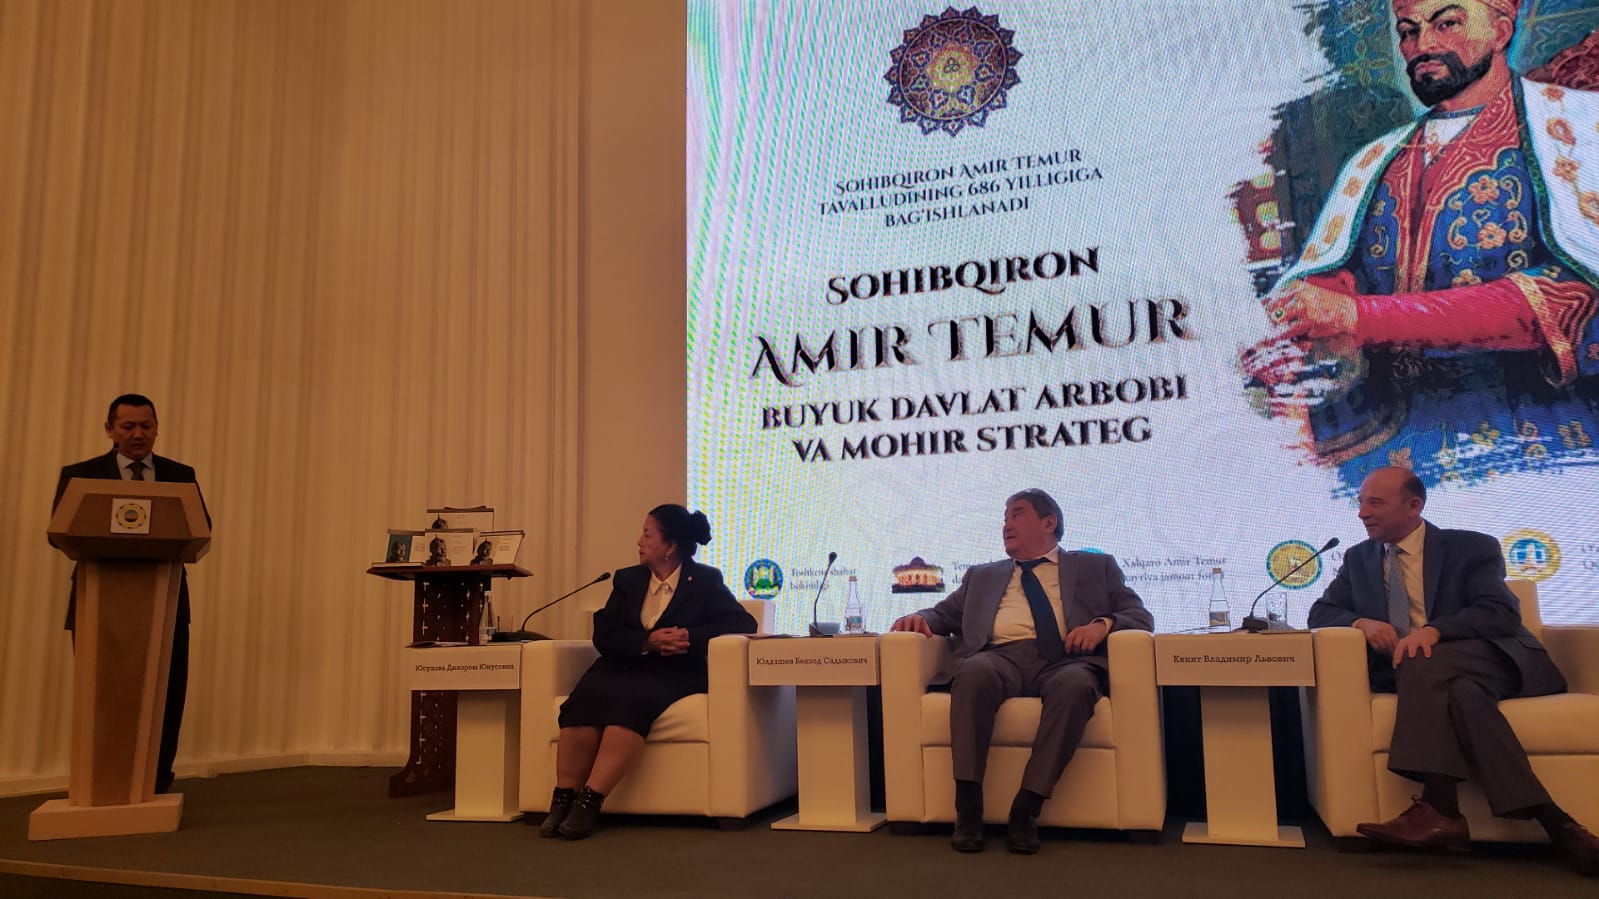 Конференция "Сахибкиран Амир Тимур – великий государственный деятель и гениальный стратег"